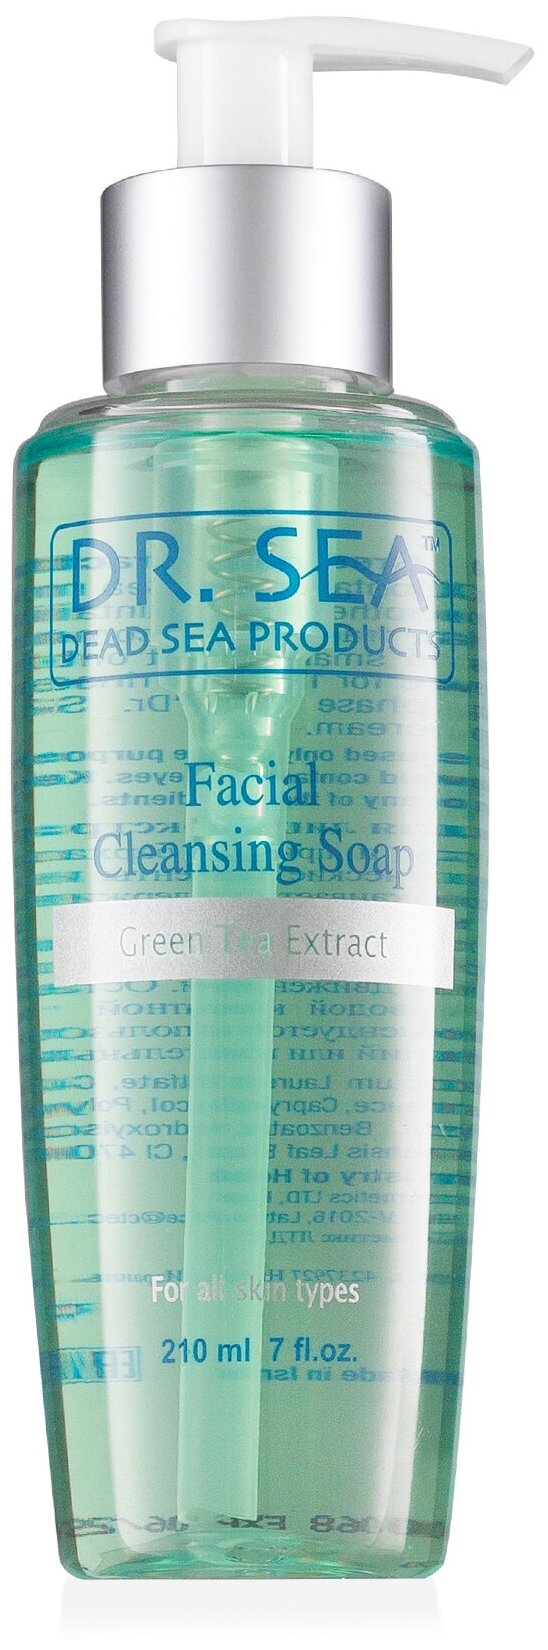 Dr. Sea гель-мыло очищающее для лица с экстрактом зеленого чая